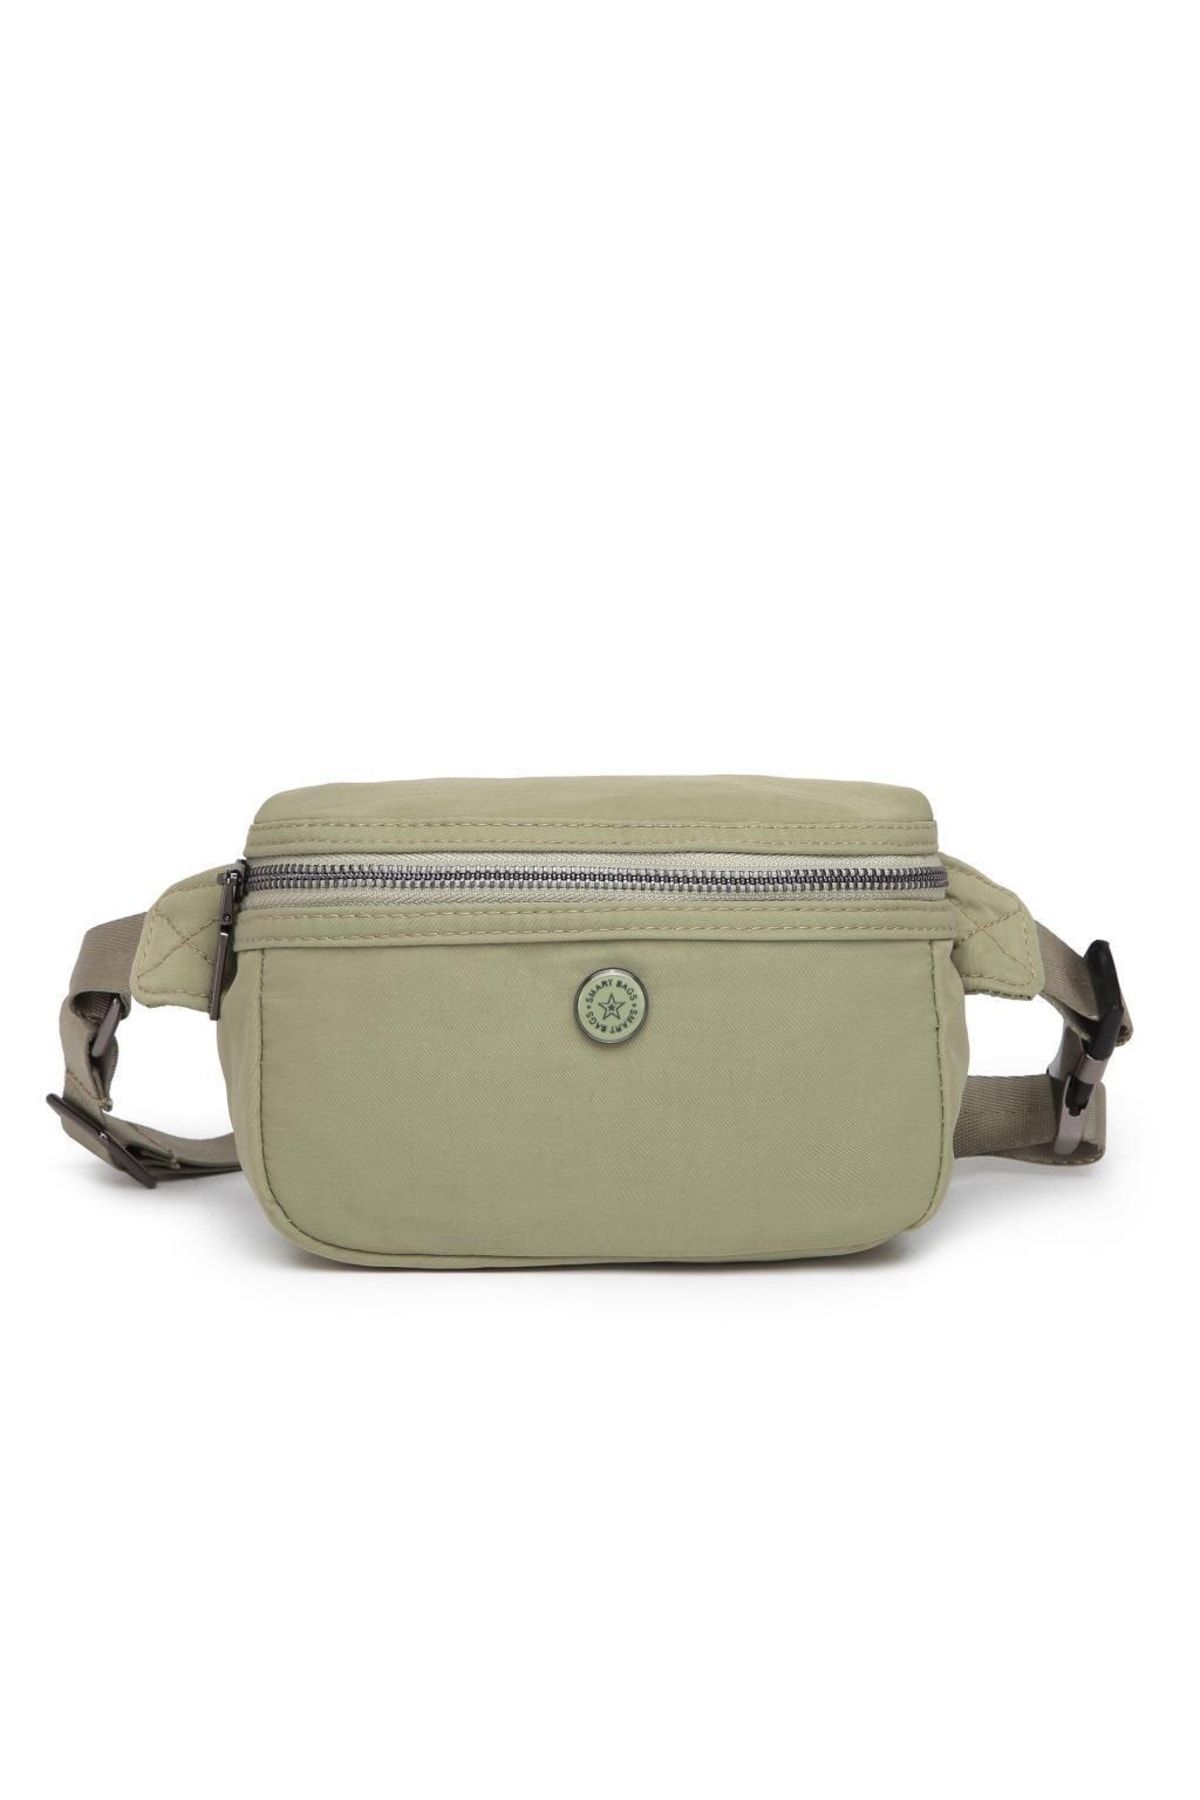 Smart Bags Bengal Kumaş Kadın Bodybag Bel Çantası 3130 Mint Yeşili